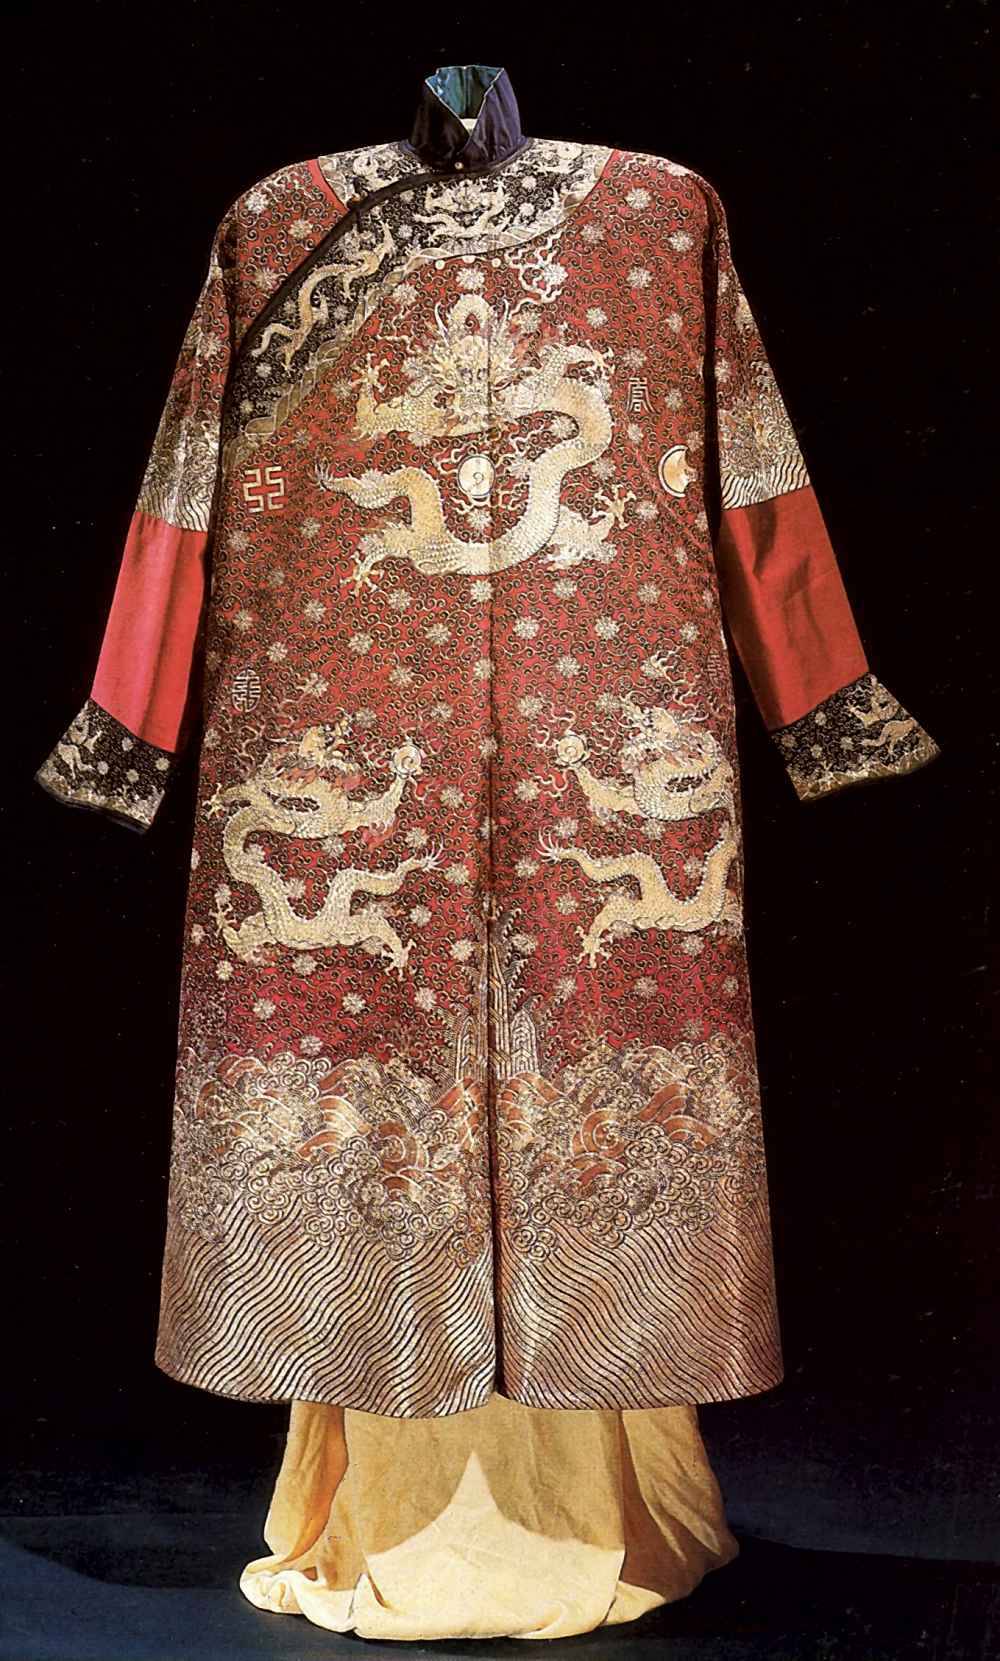 платье императора с драконами